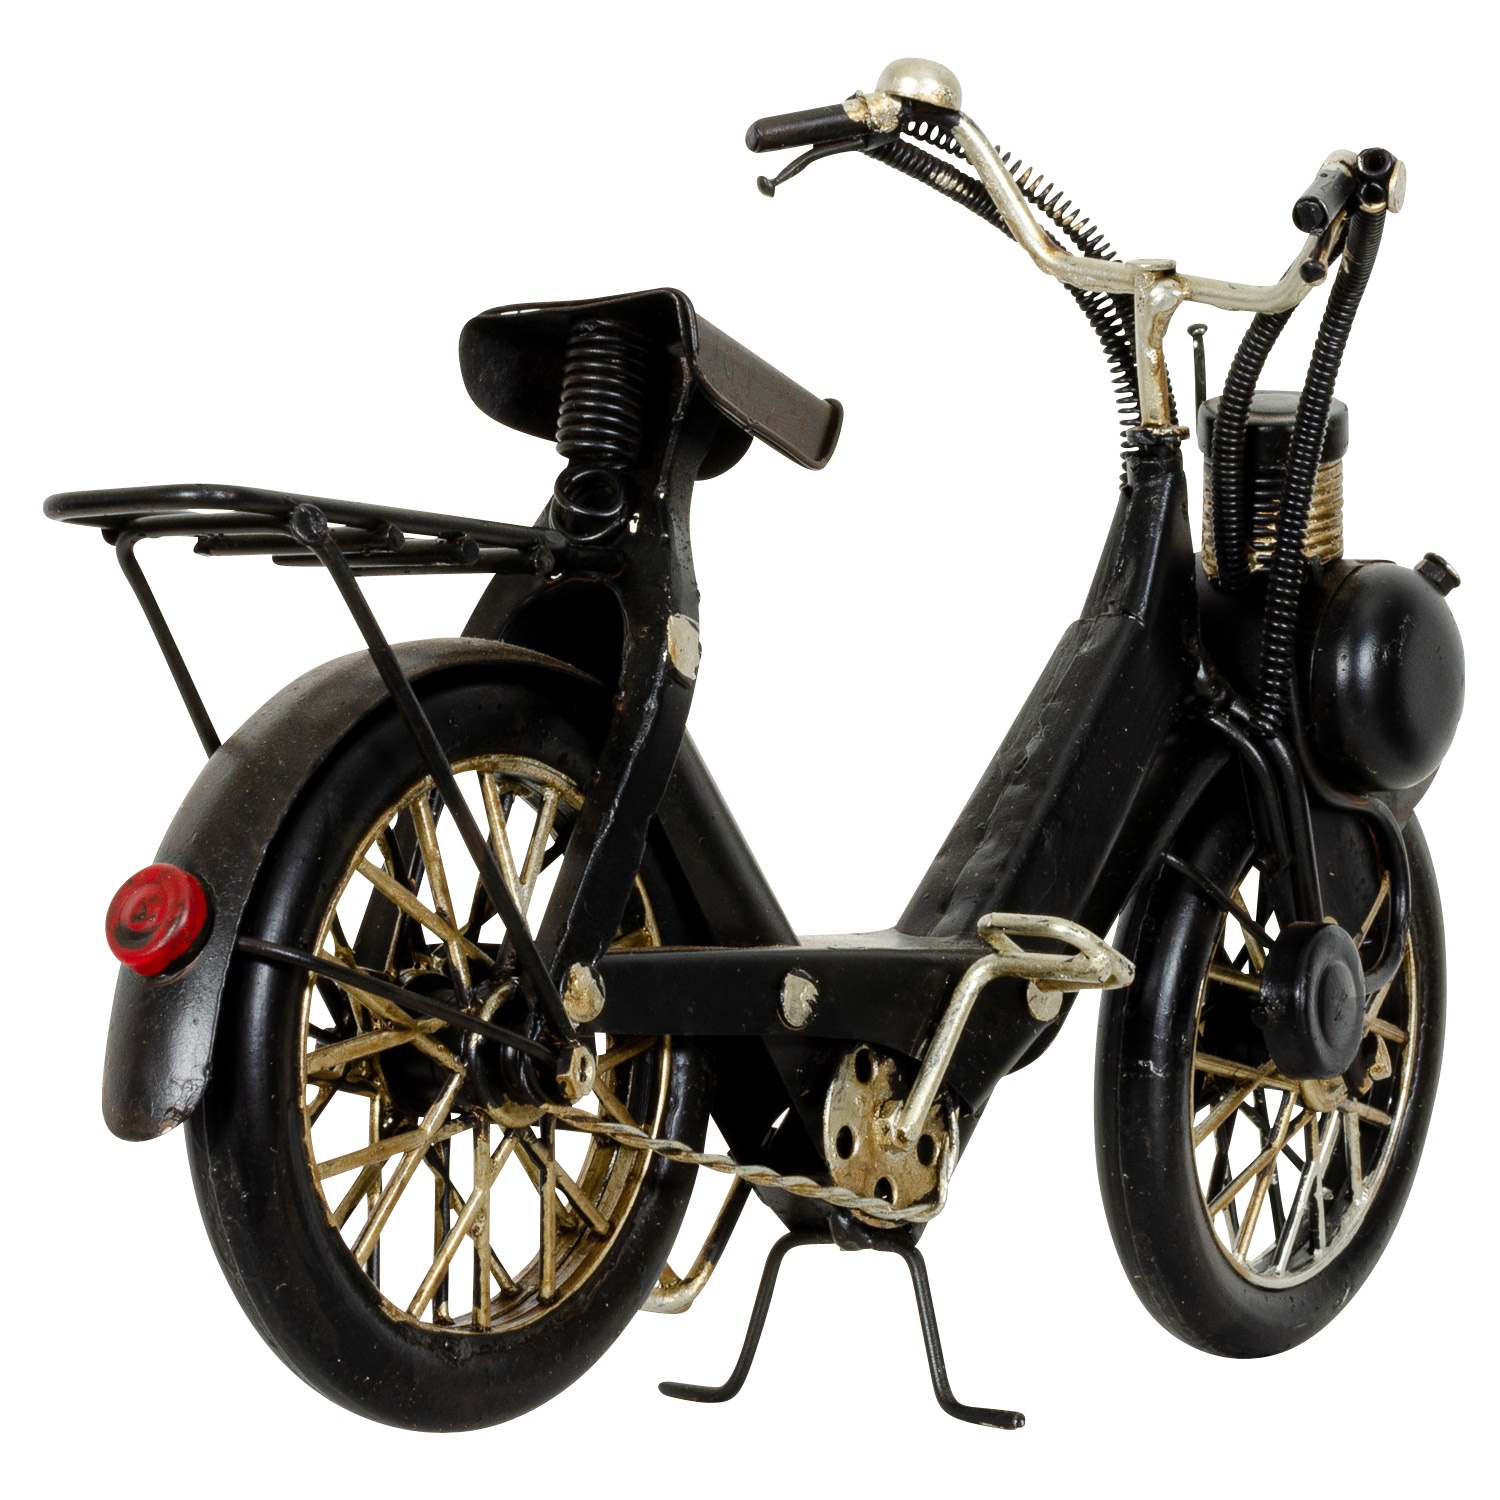 Modell Fahrrad Mofa Mofamodell Moped Nostalgie Blech Metall Antik-Stil ... - BL 243 5